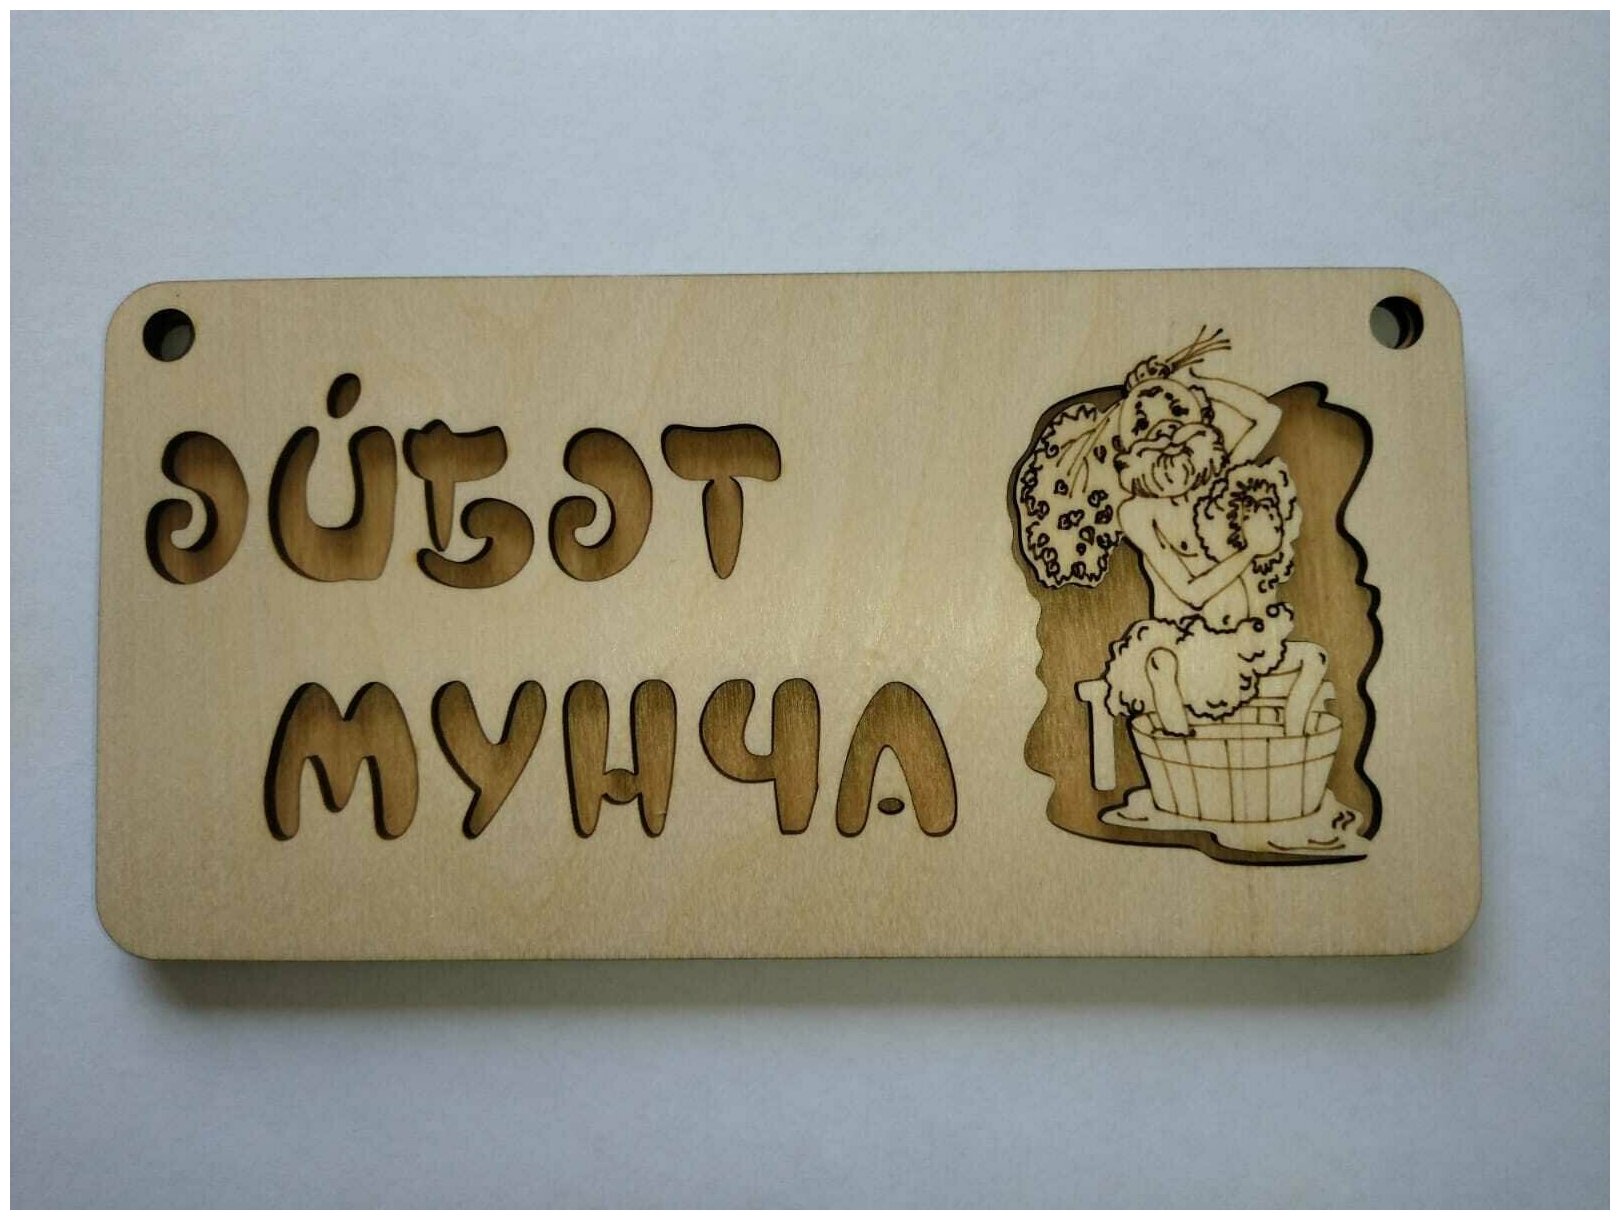 Табличка для бани "Эйбэт Мунча" на татарском языке, дерево